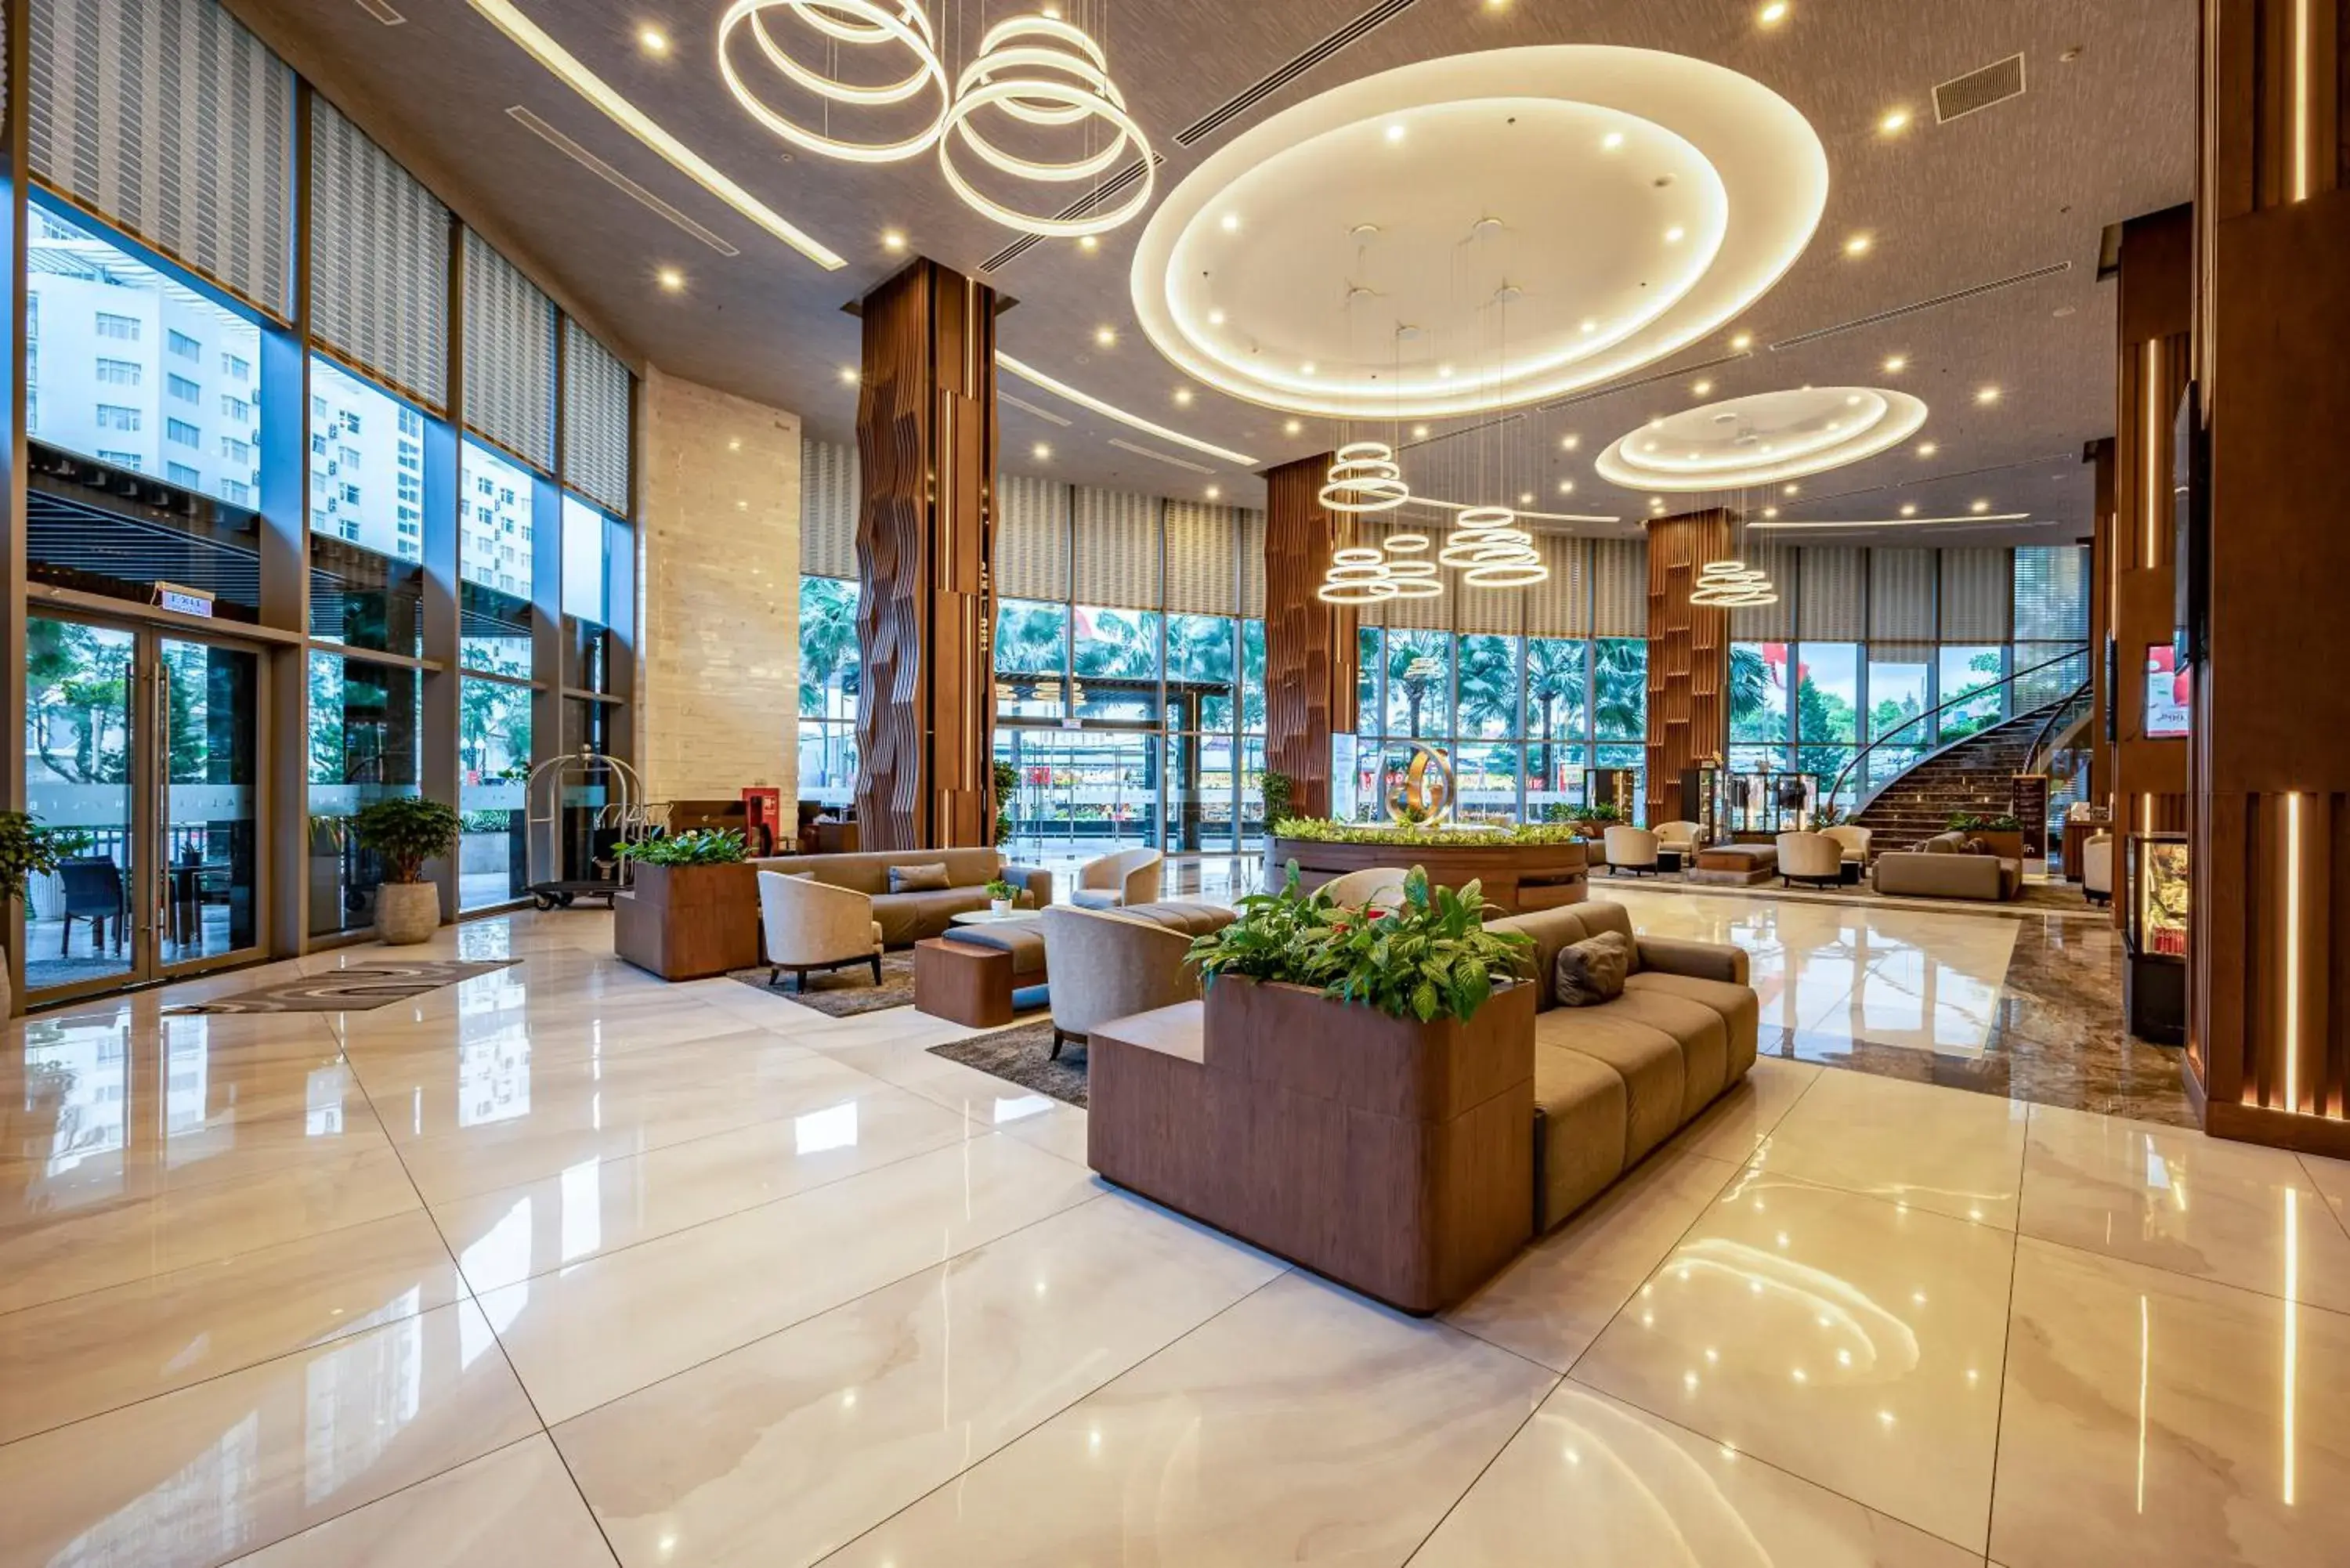 Lobby or reception, Lobby/Reception in Malibu Hotel